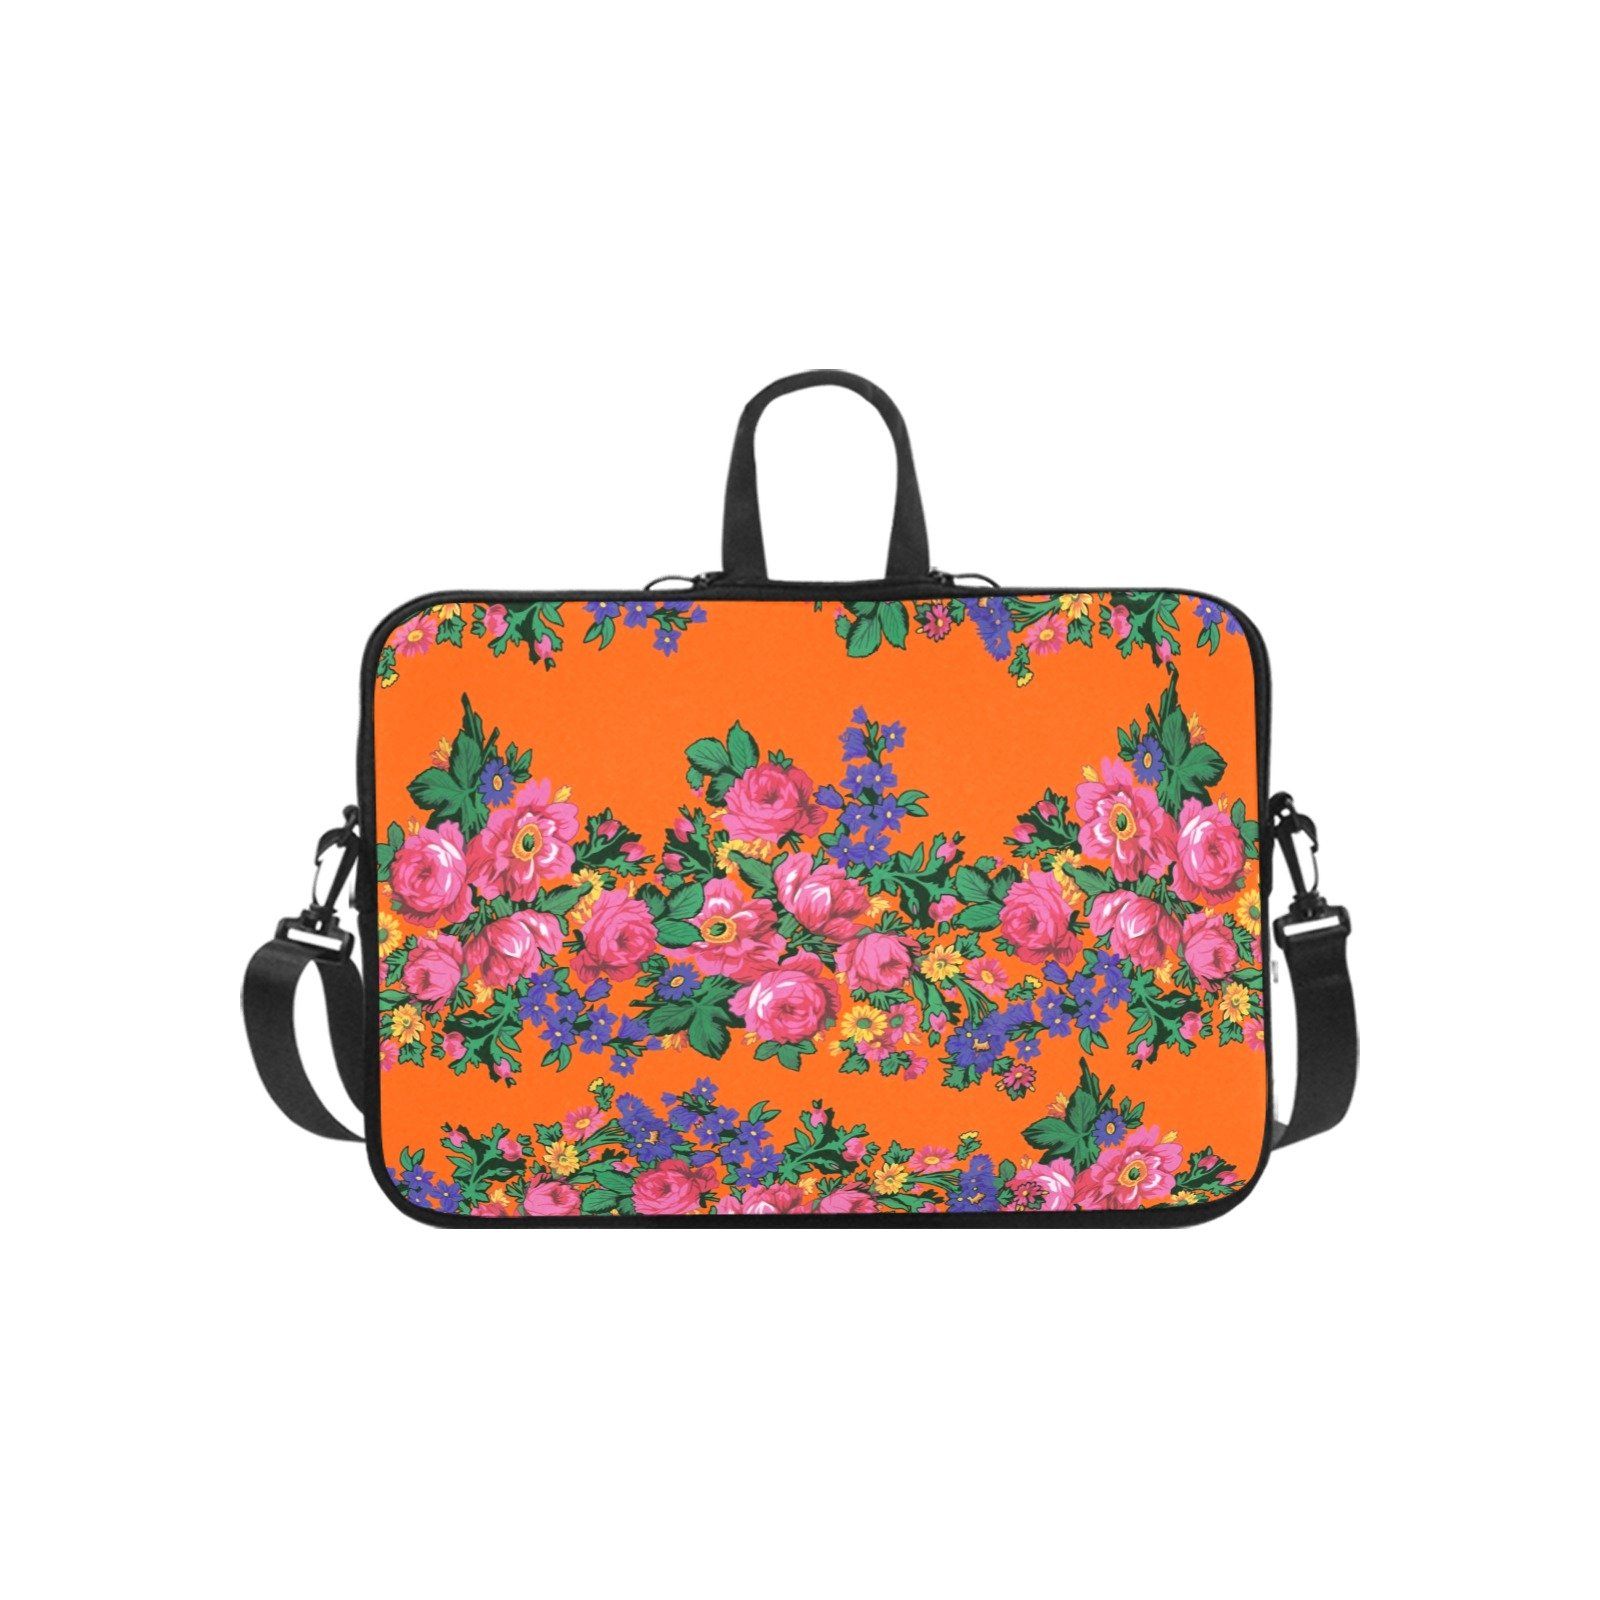 Kokum's Revenge Sierra Laptop Handbags 14" bag e-joyer 